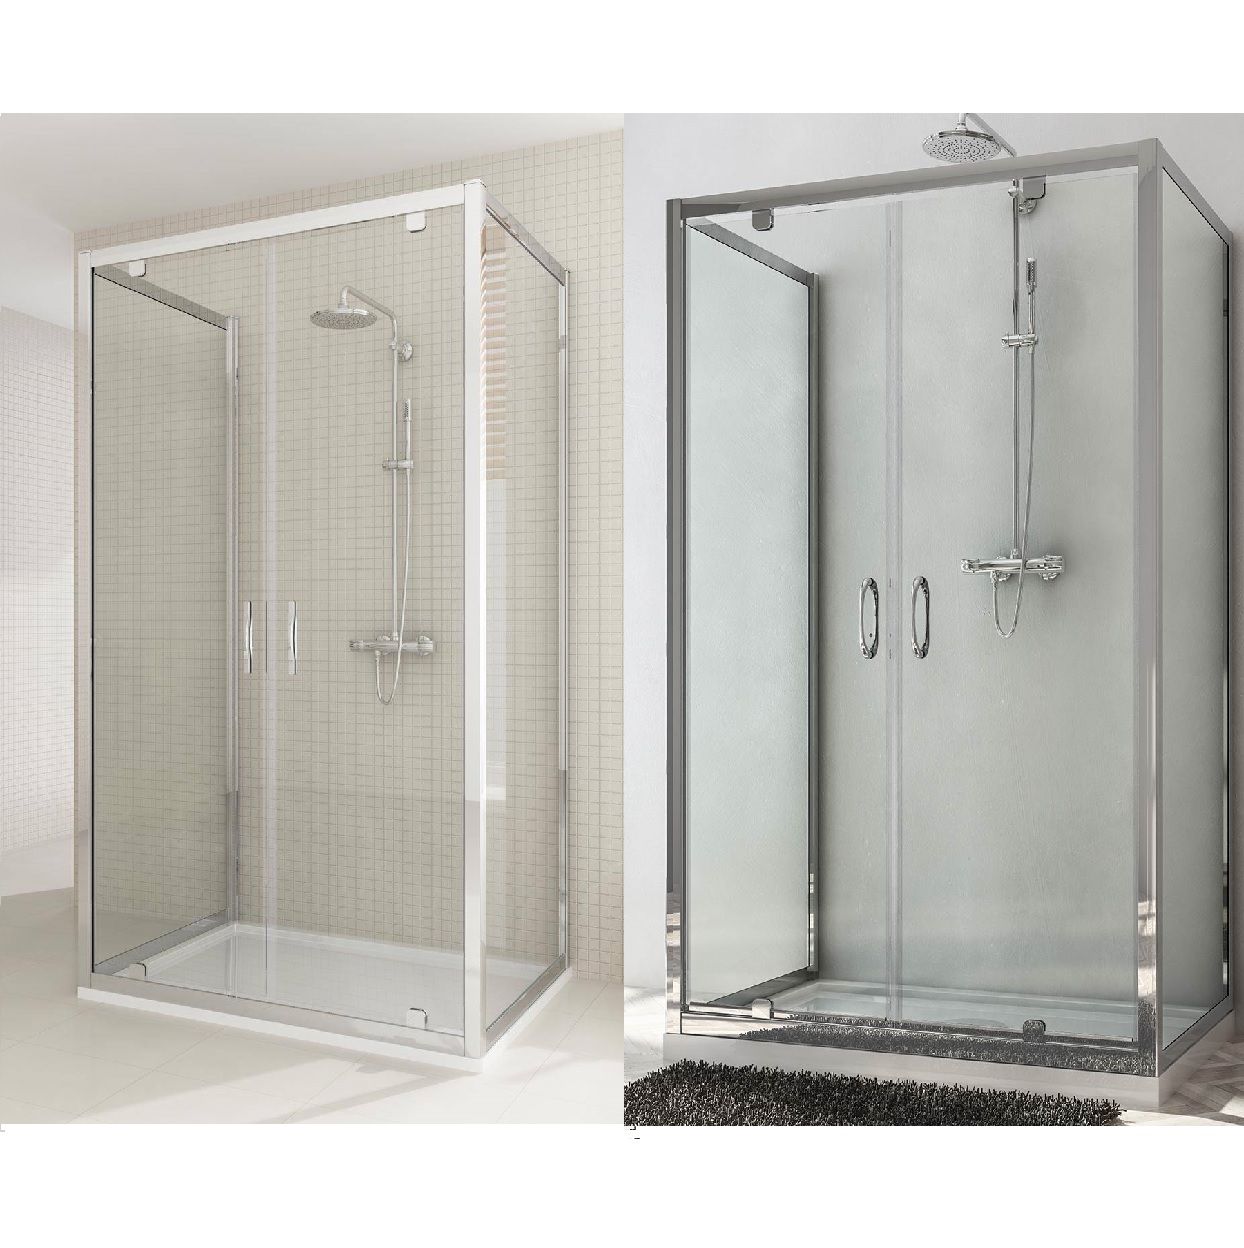 shower-enclosure-double-saloon-door-box025-12_1543571405_182